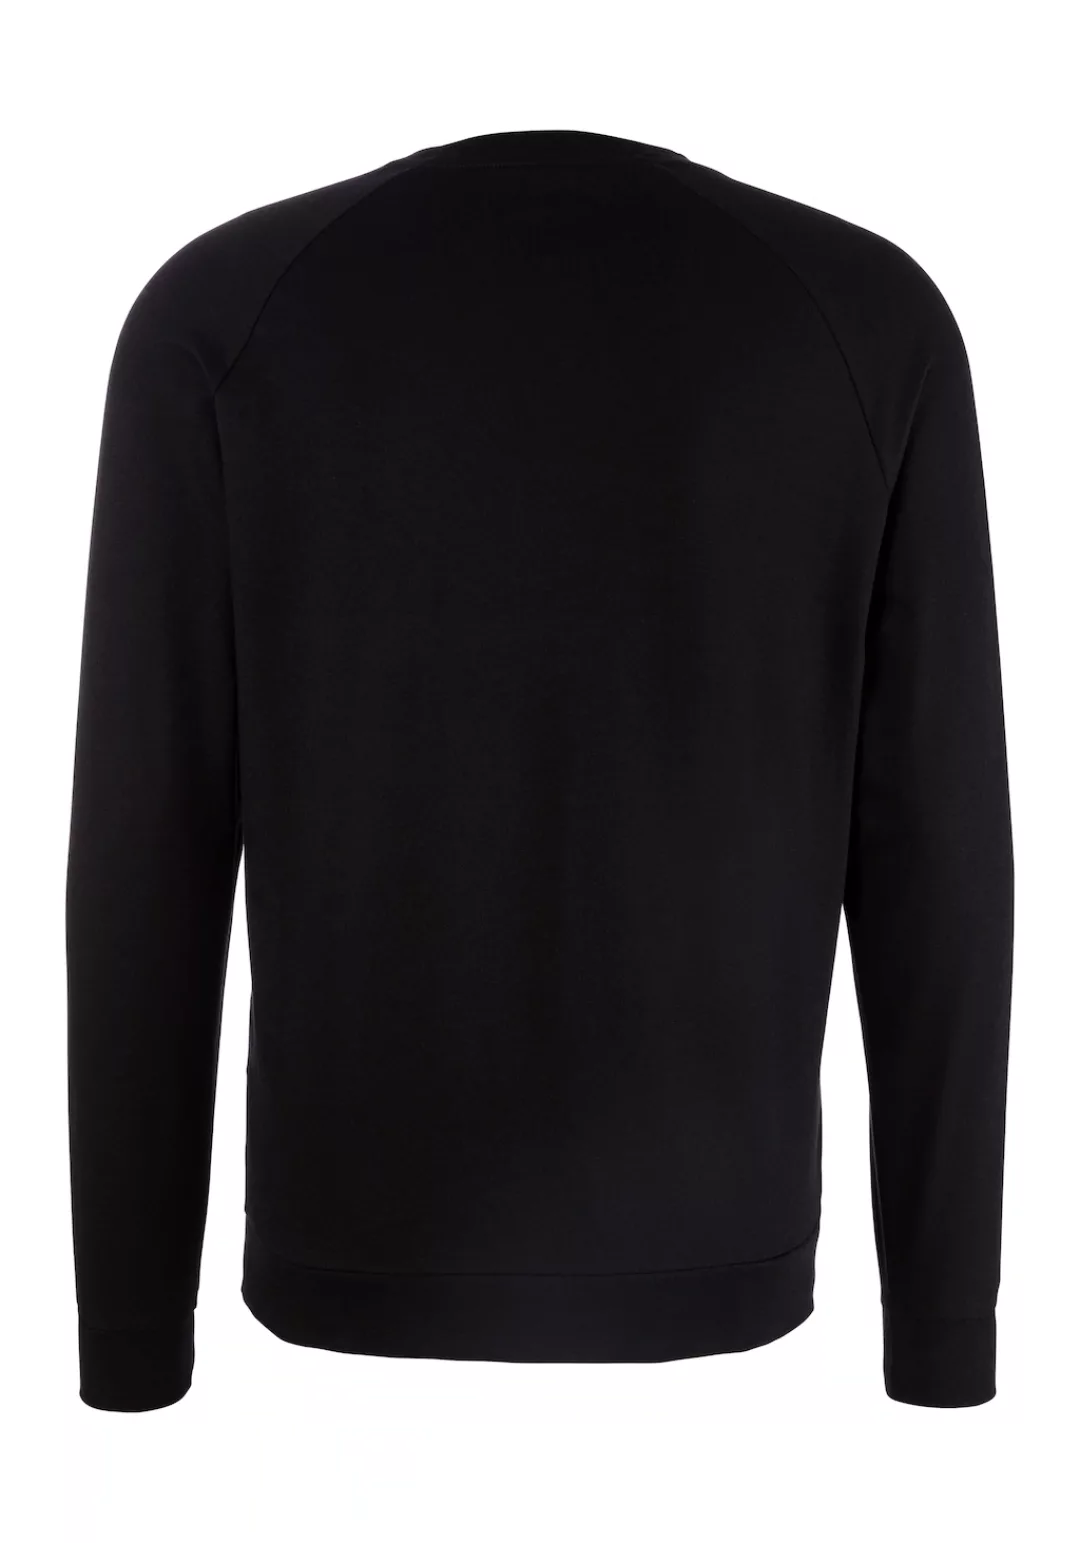 BOSS Sweatshirt "Authentic Sweatshirt" günstig online kaufen